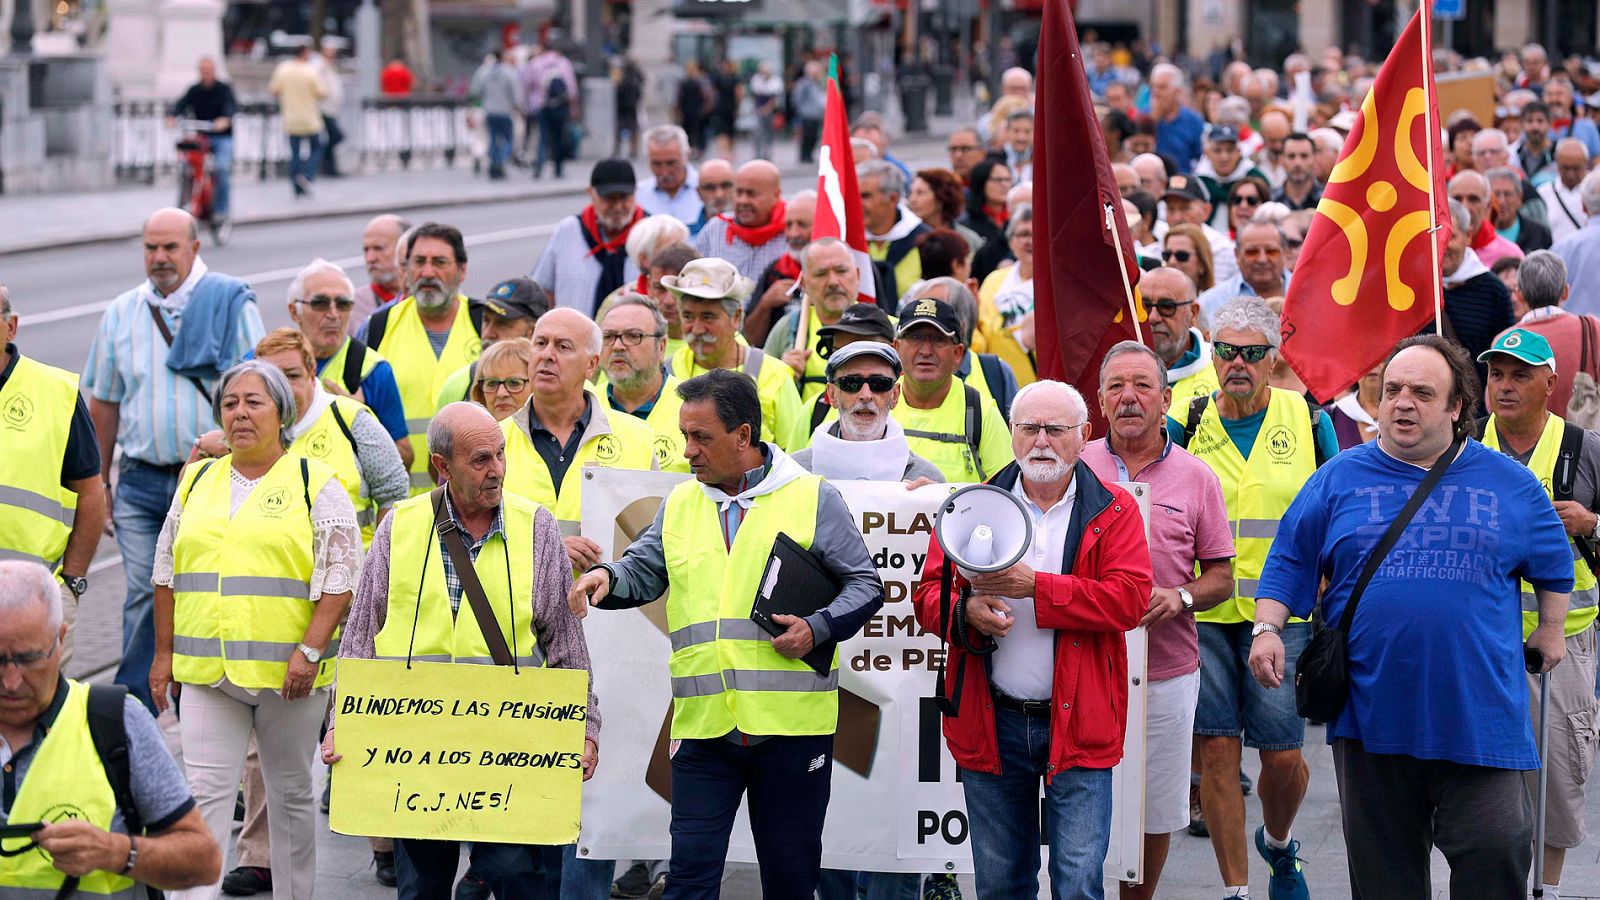 Pensiones - Jubilados marchan hacia Madrid para reclamar la subida de las pensiones - RTVE.es